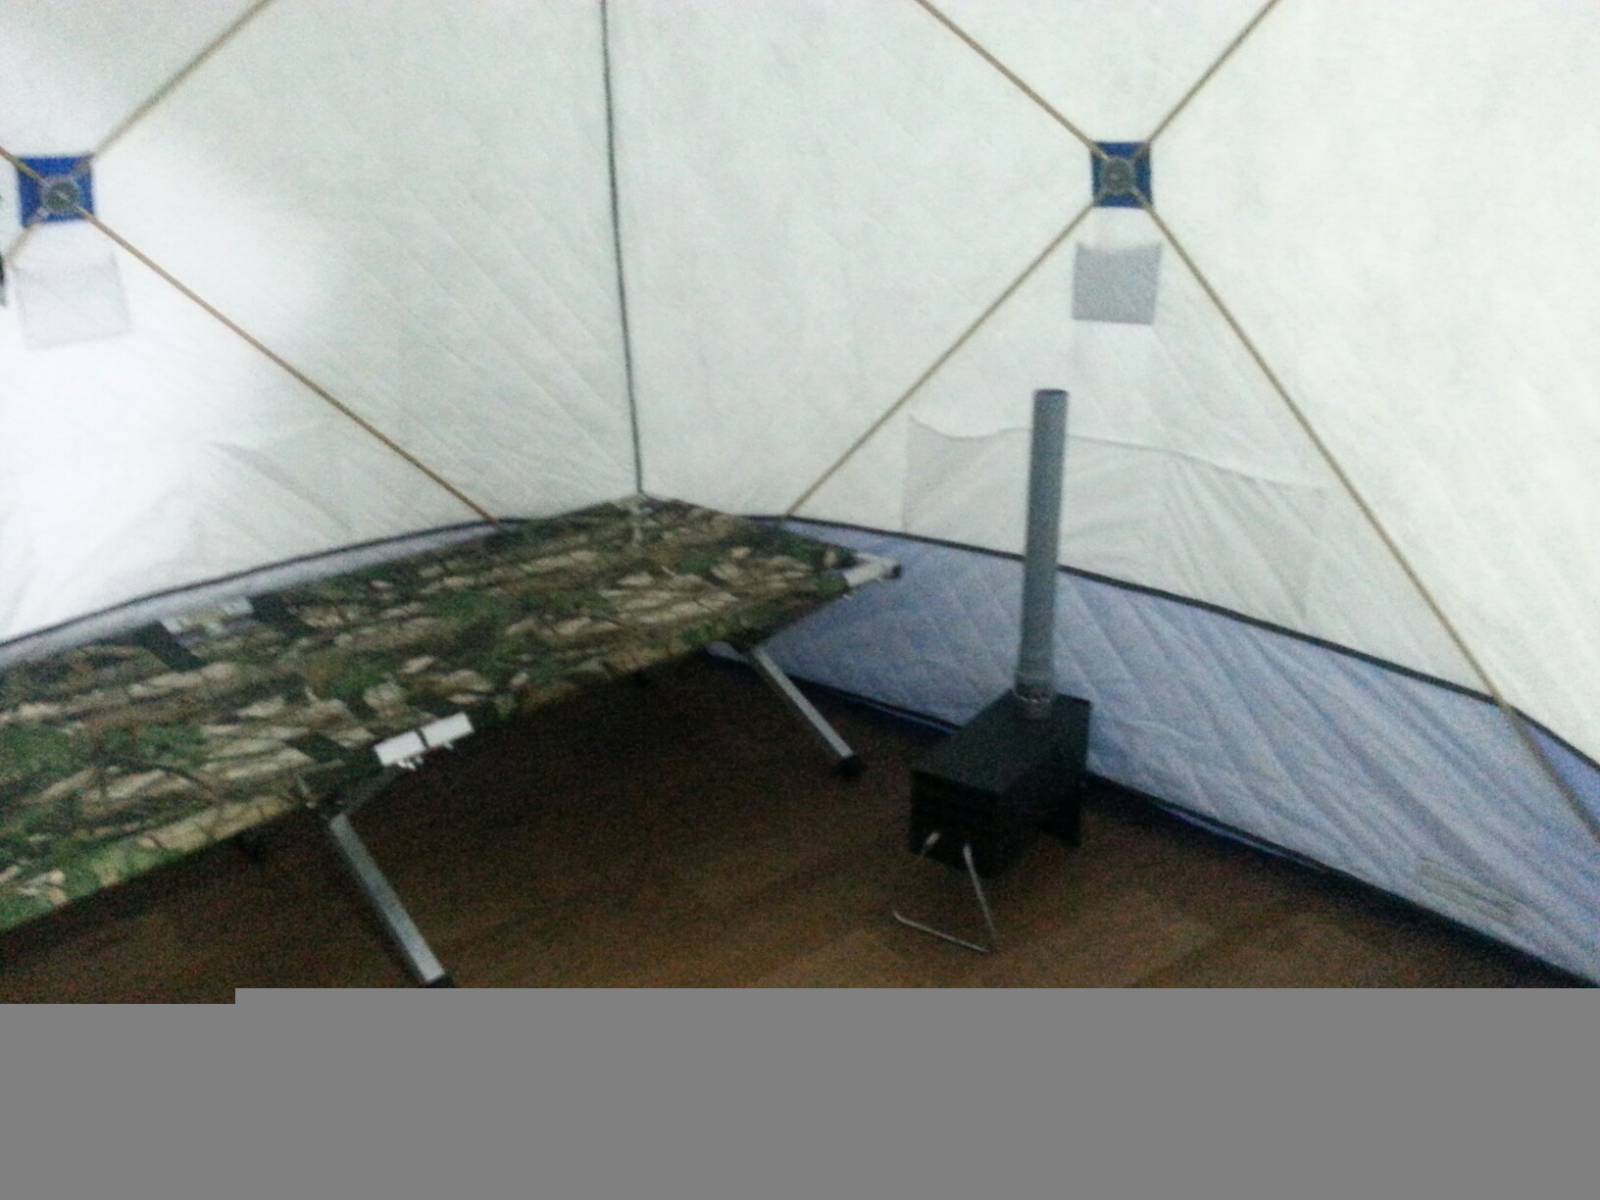 Зимняя палатка своими руками: пошив и изготовление палатки для рыбалки (135 фото лучших вариантов зимних домиков)